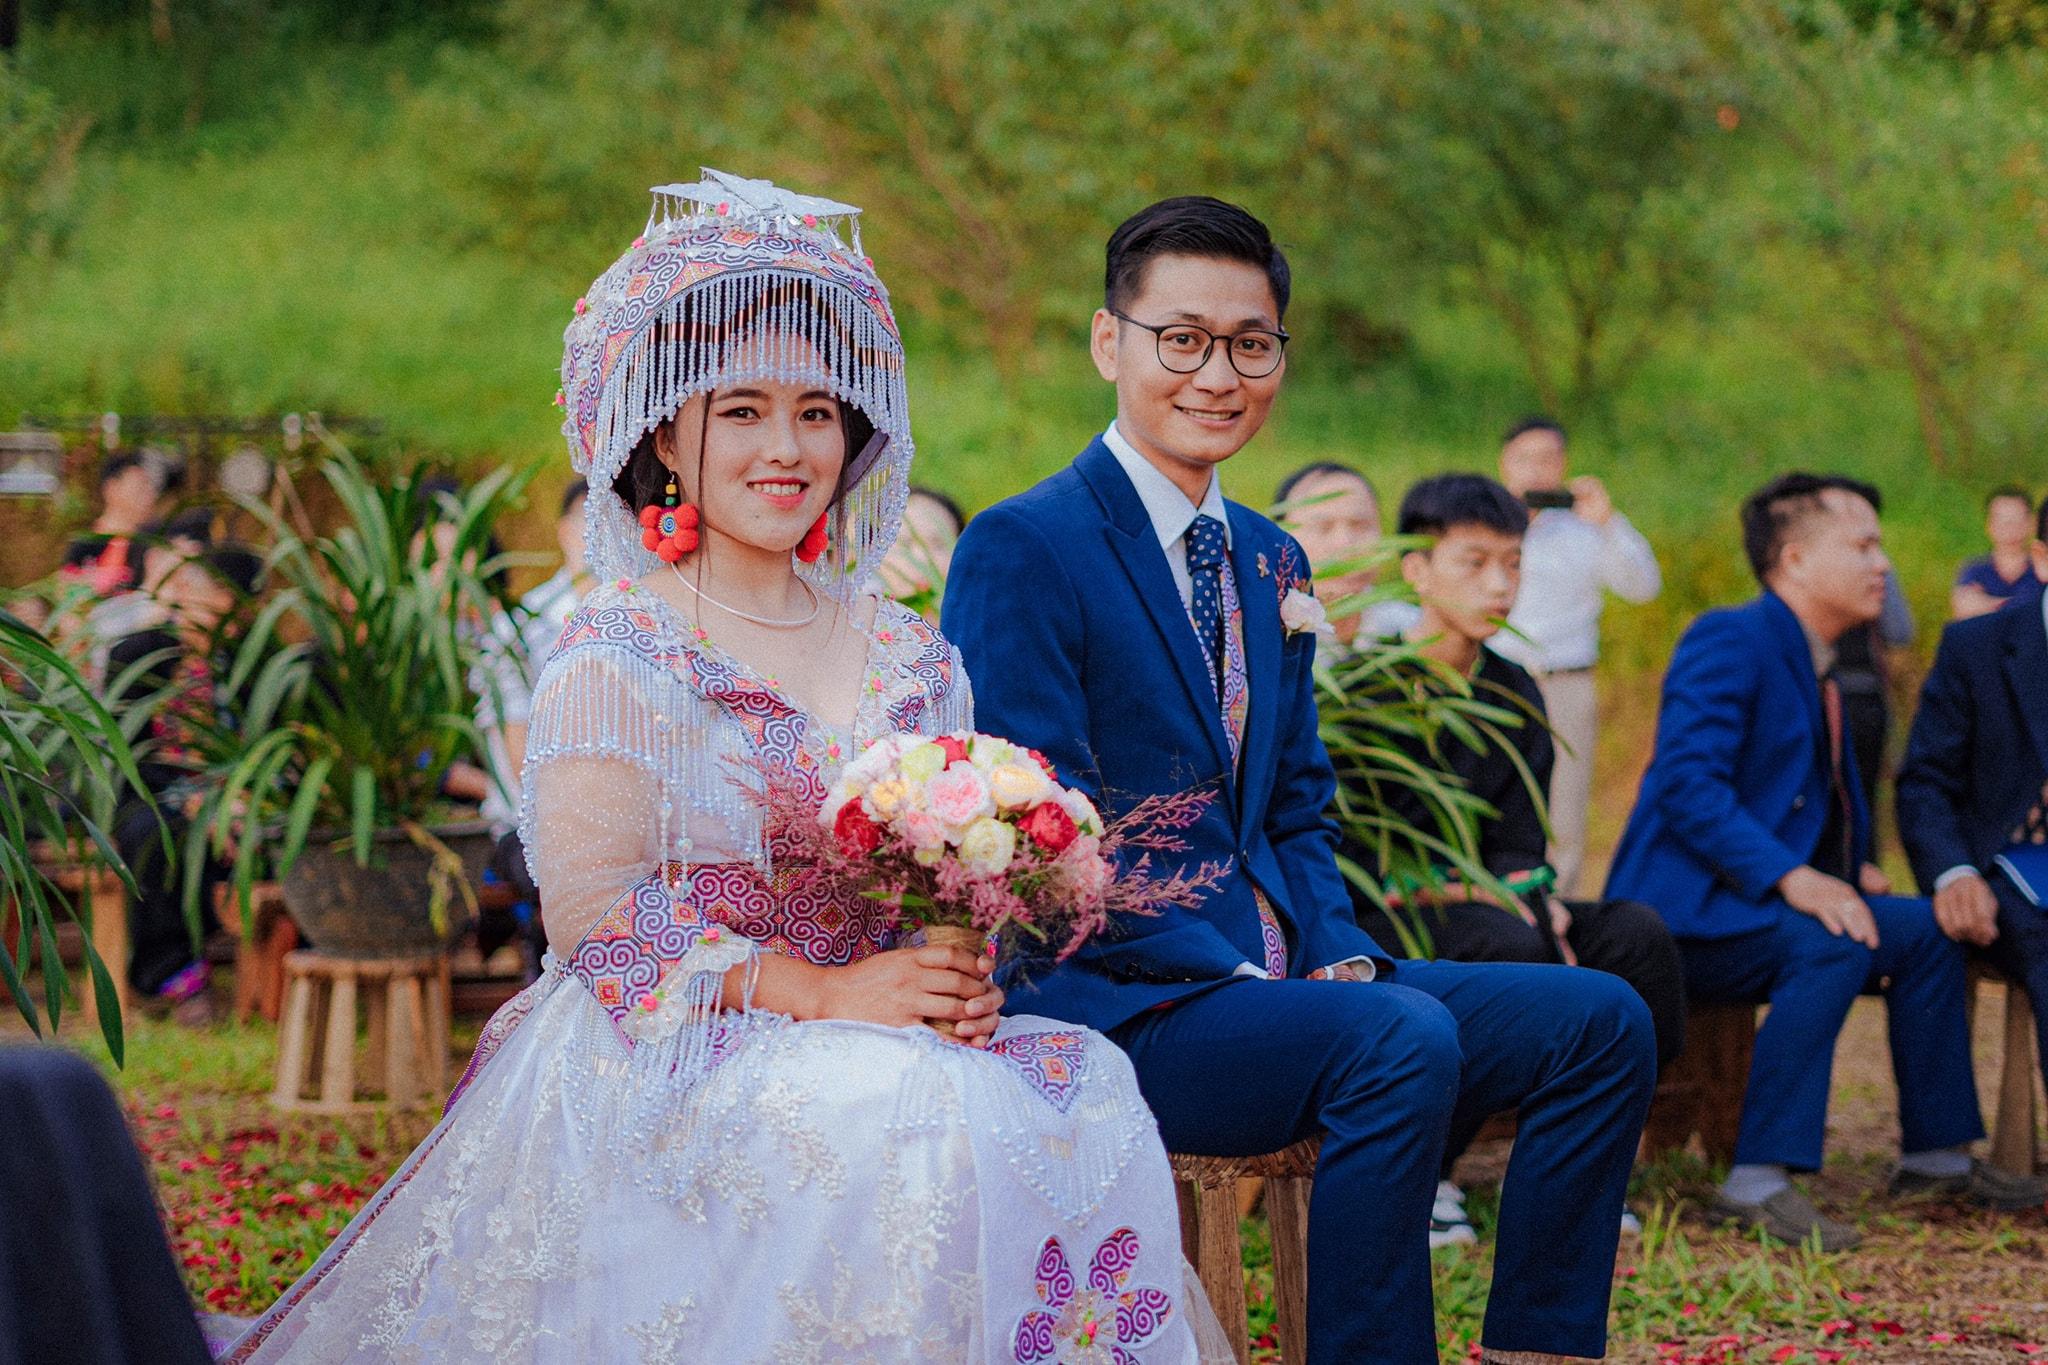 Hình ảnh đám cưới đầy phong cách giữa chàng Sài Gòn và nàng H\'Mông sẽ cho bạn cảm giác lung linh và hoàn toàn độc đáo. Không chỉ là một buổi lễ ăn mừng tình yêu, mà đây còn là một cuộc phiêu lưu đến vùng đất Tây Bắc đầy nắng và gió.